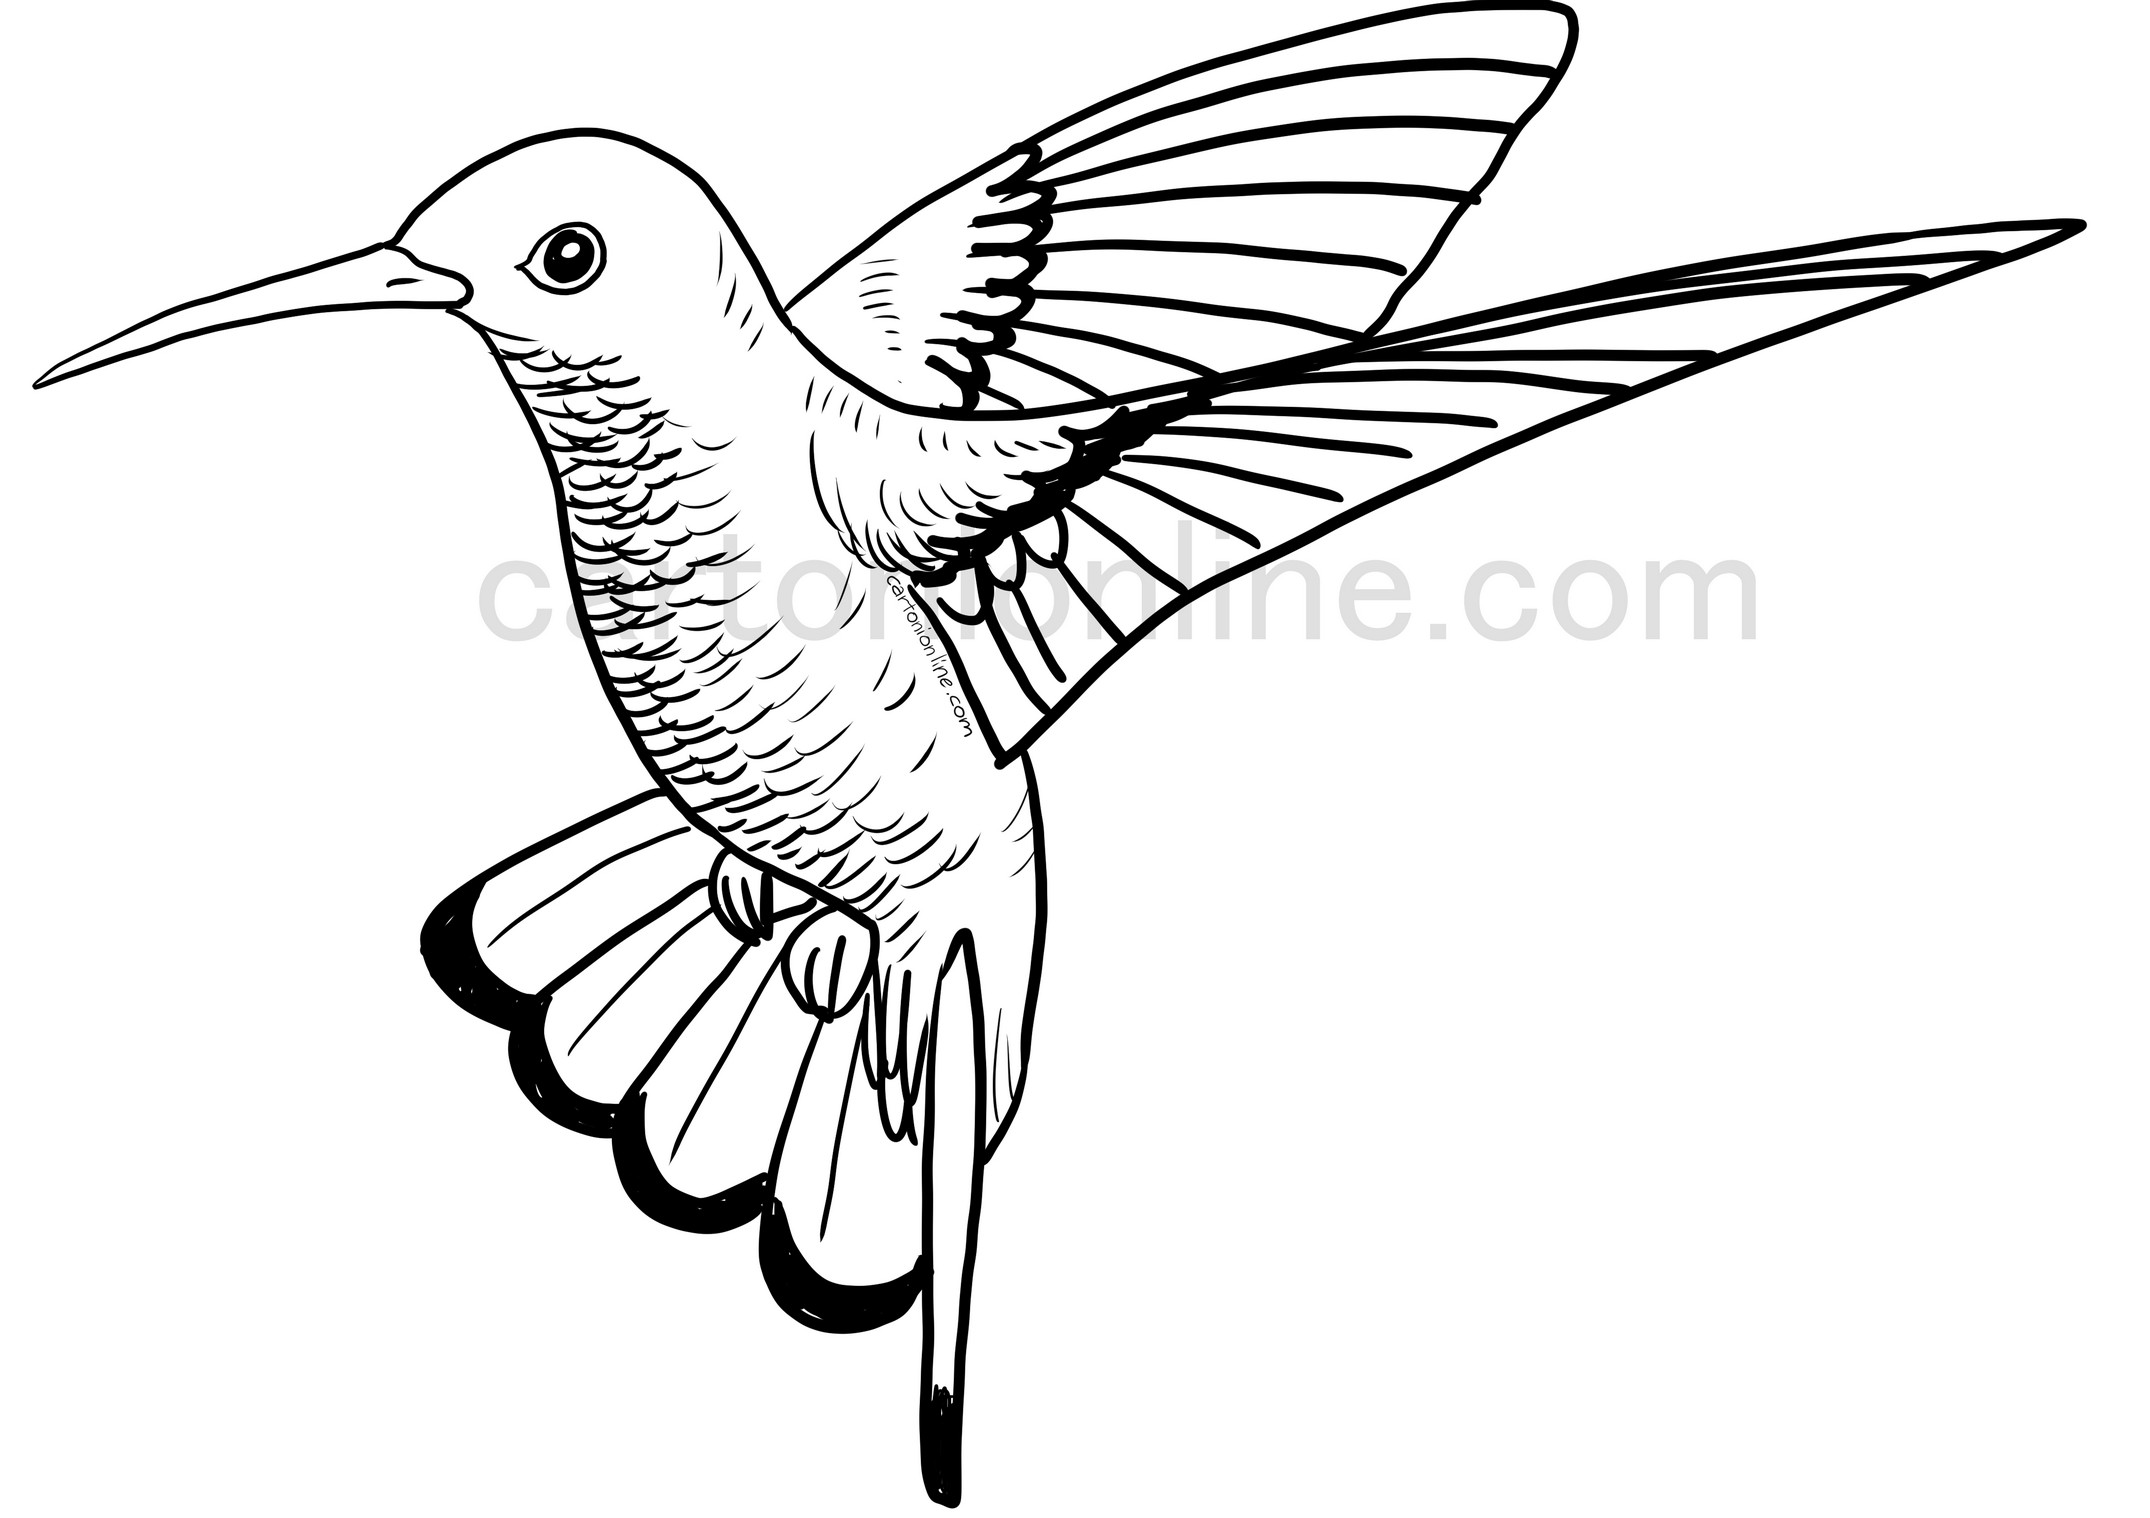 Página para colorear de colibrí volador